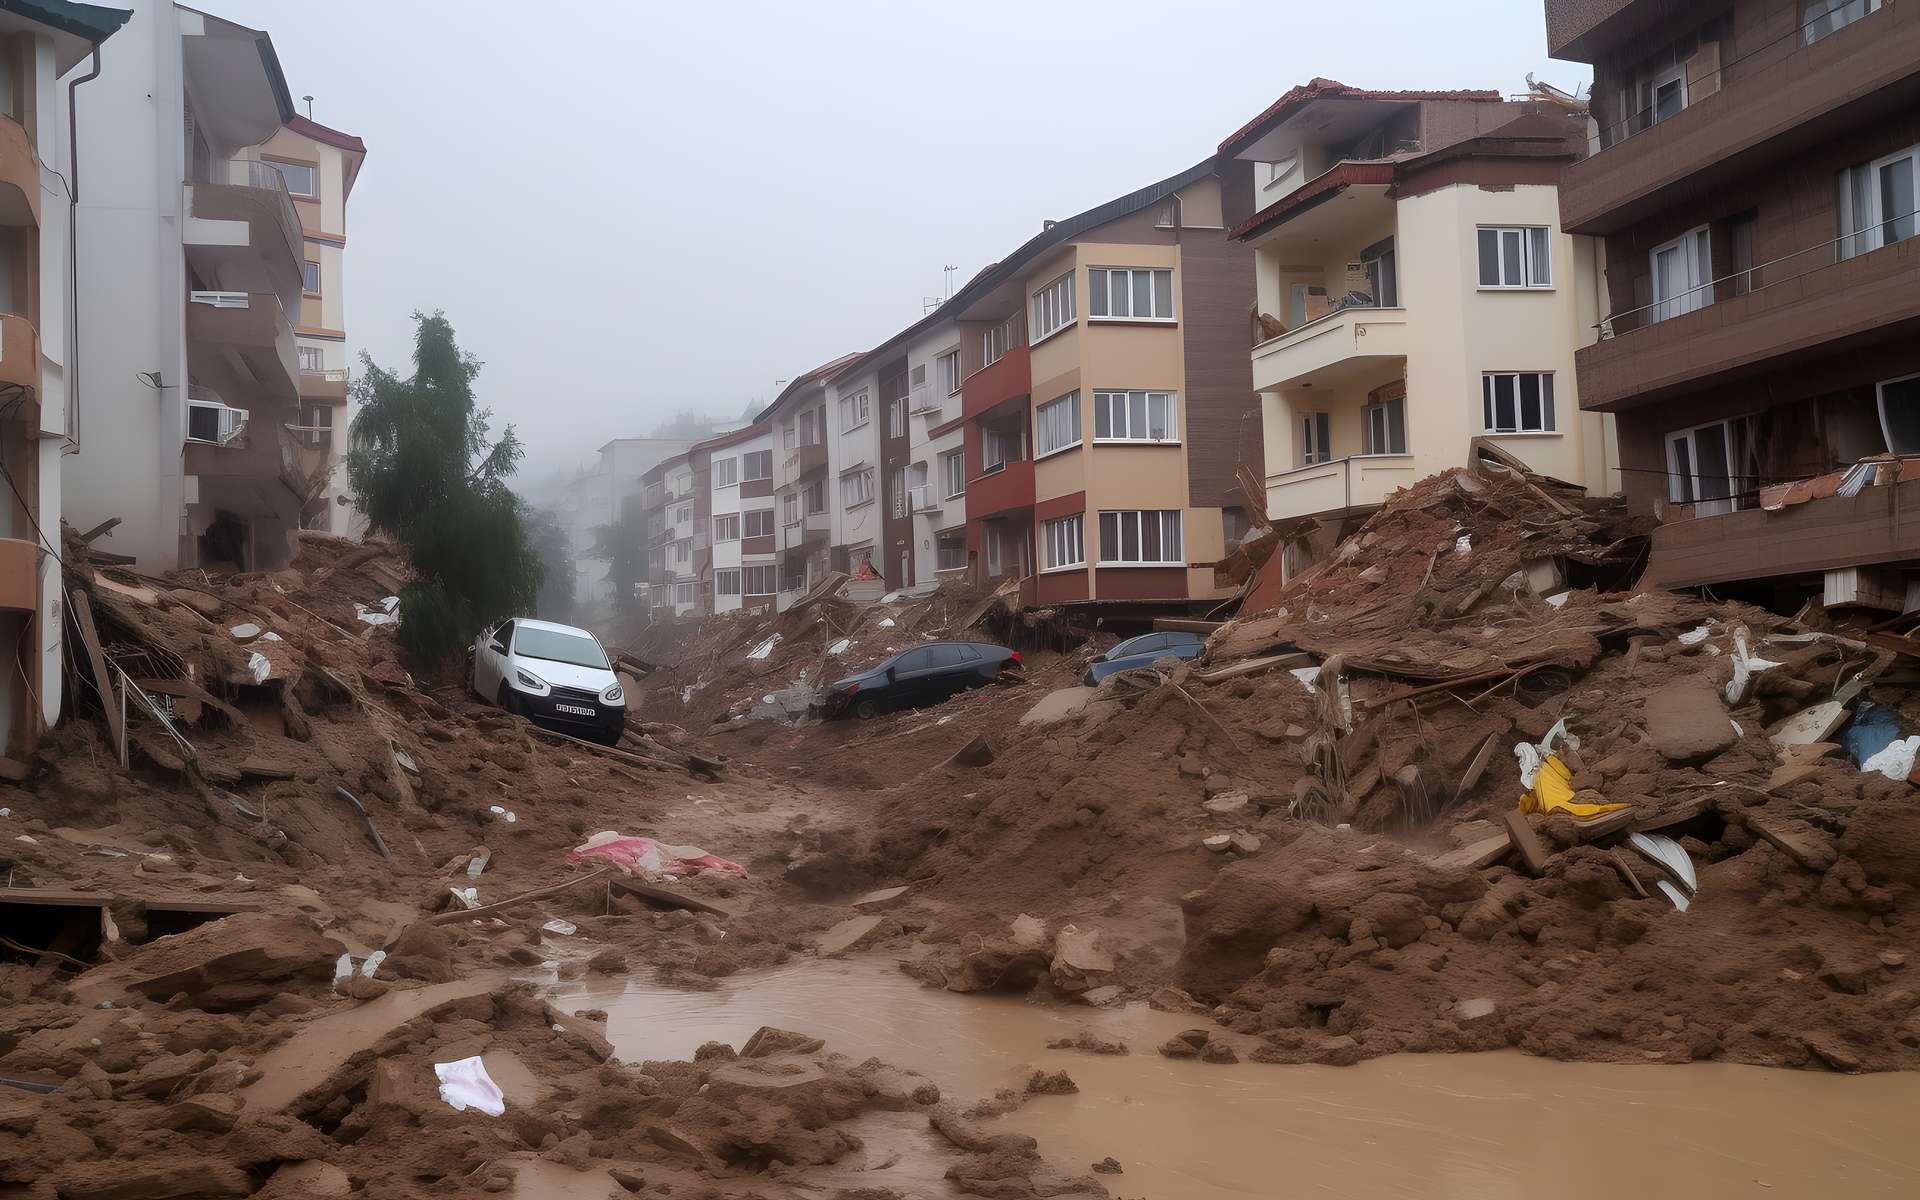 Le Brésil sous le choc après les inondations fulgurantes qui ont dévasté plusieurs villes